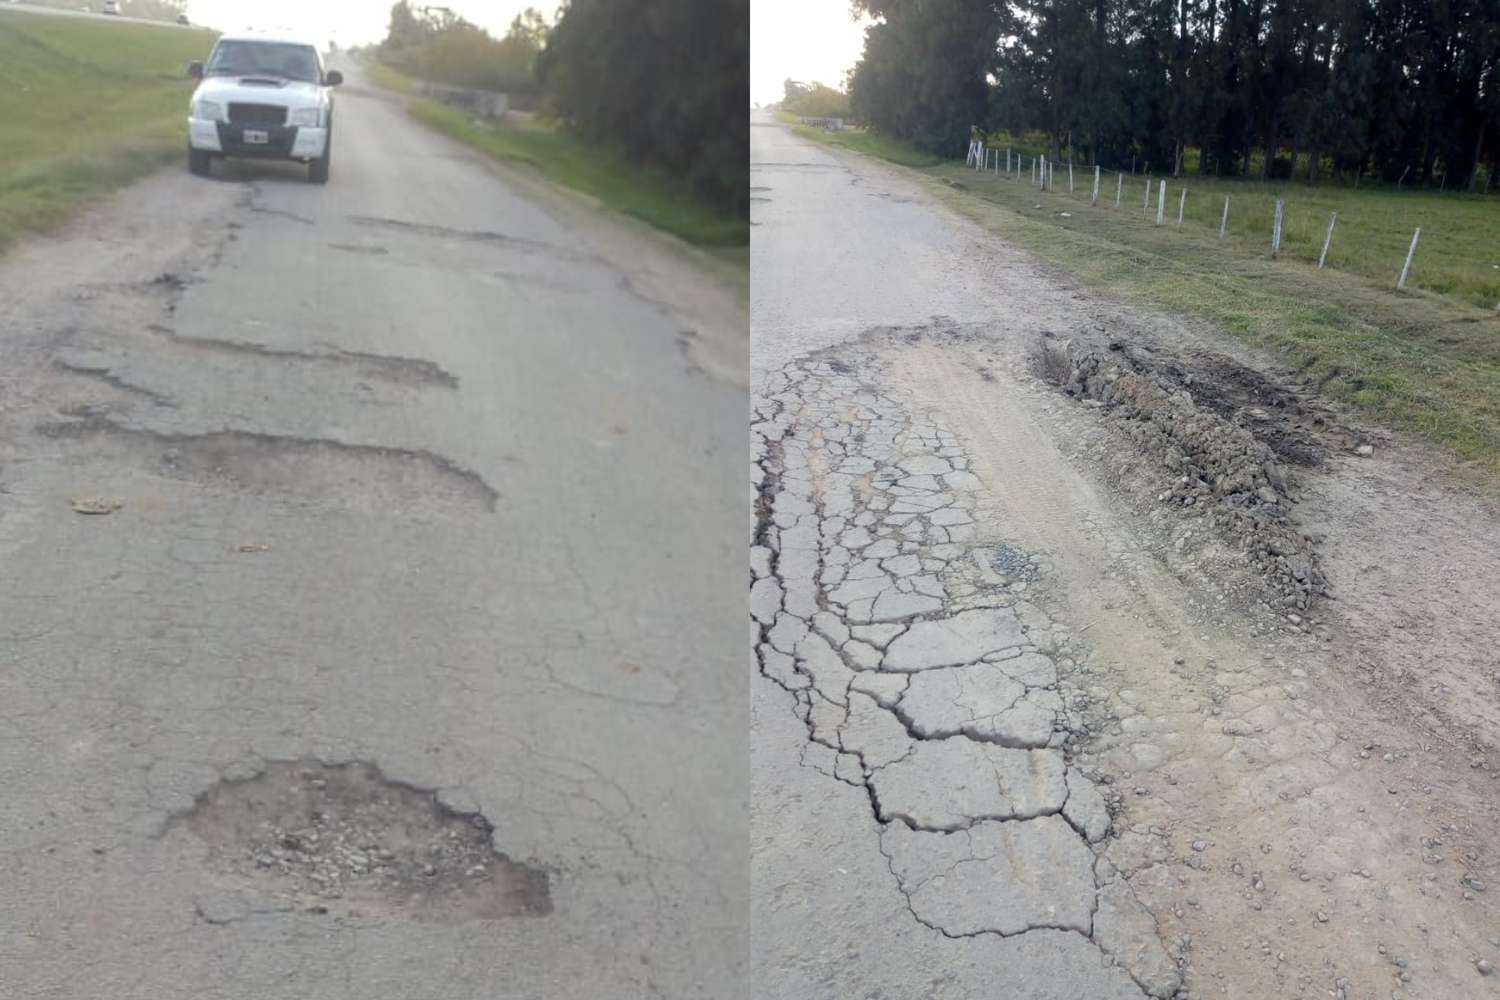 Reclaman reparaciones en la colectora de ruta 9, entre 191 y Río Tala: “Es un desastre, no podemos pasar más”